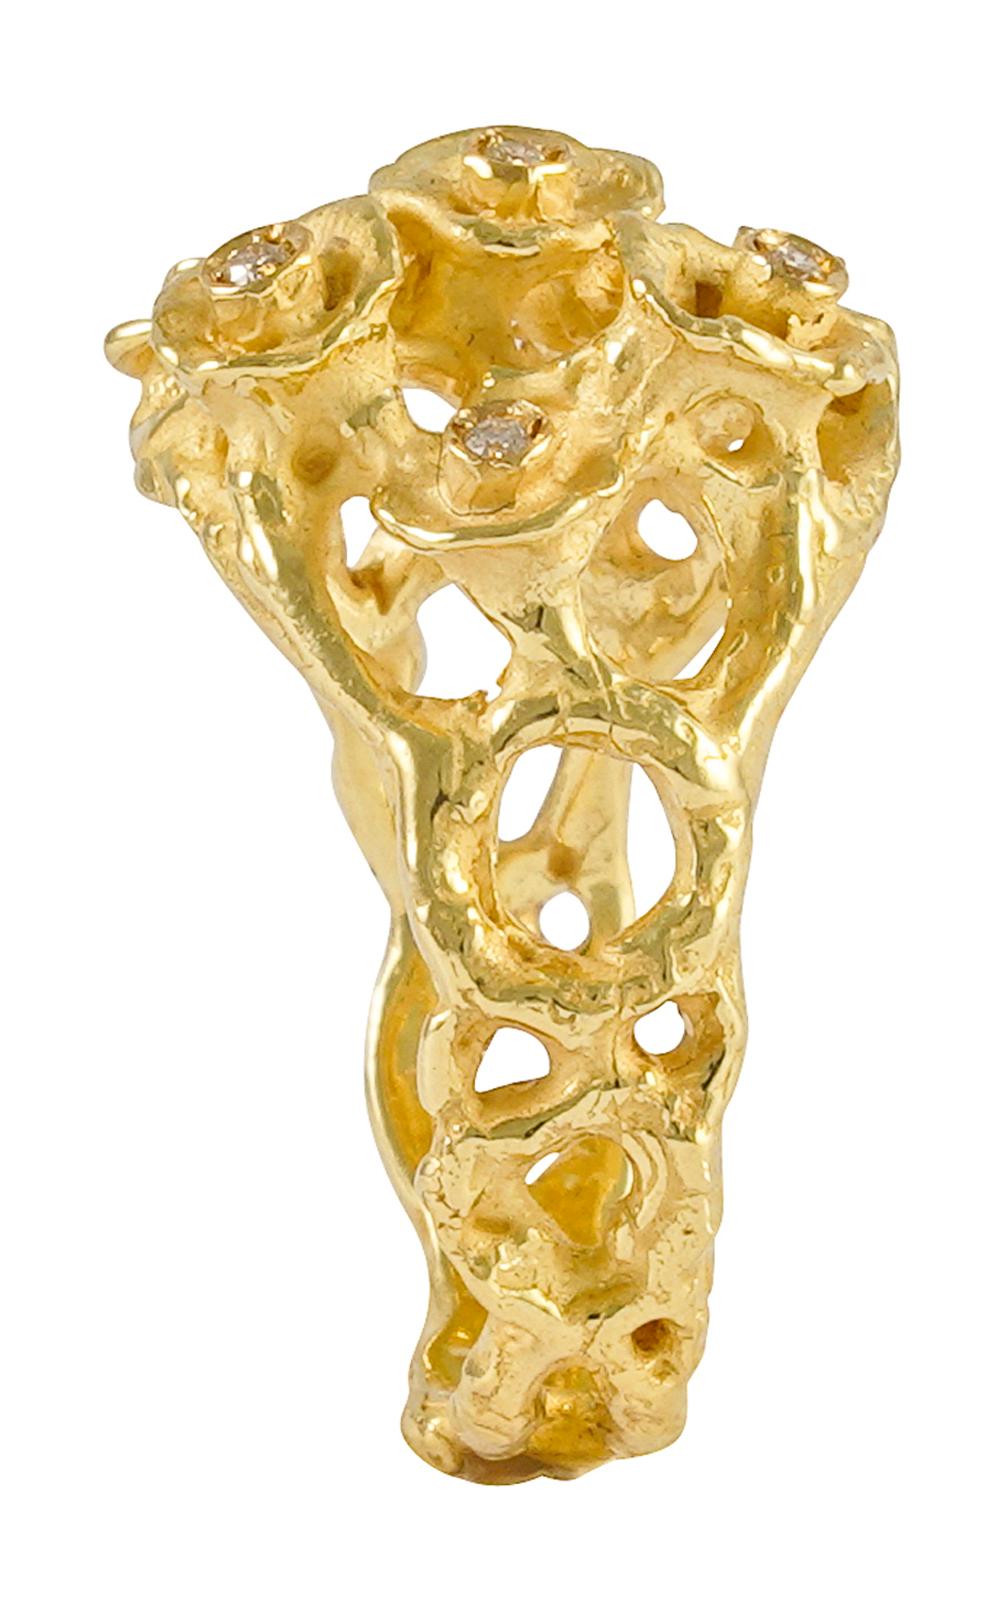 Schöner Ring aus 18 kt Gelbgold mit Diamanten, dieser Ring ist Teil der 